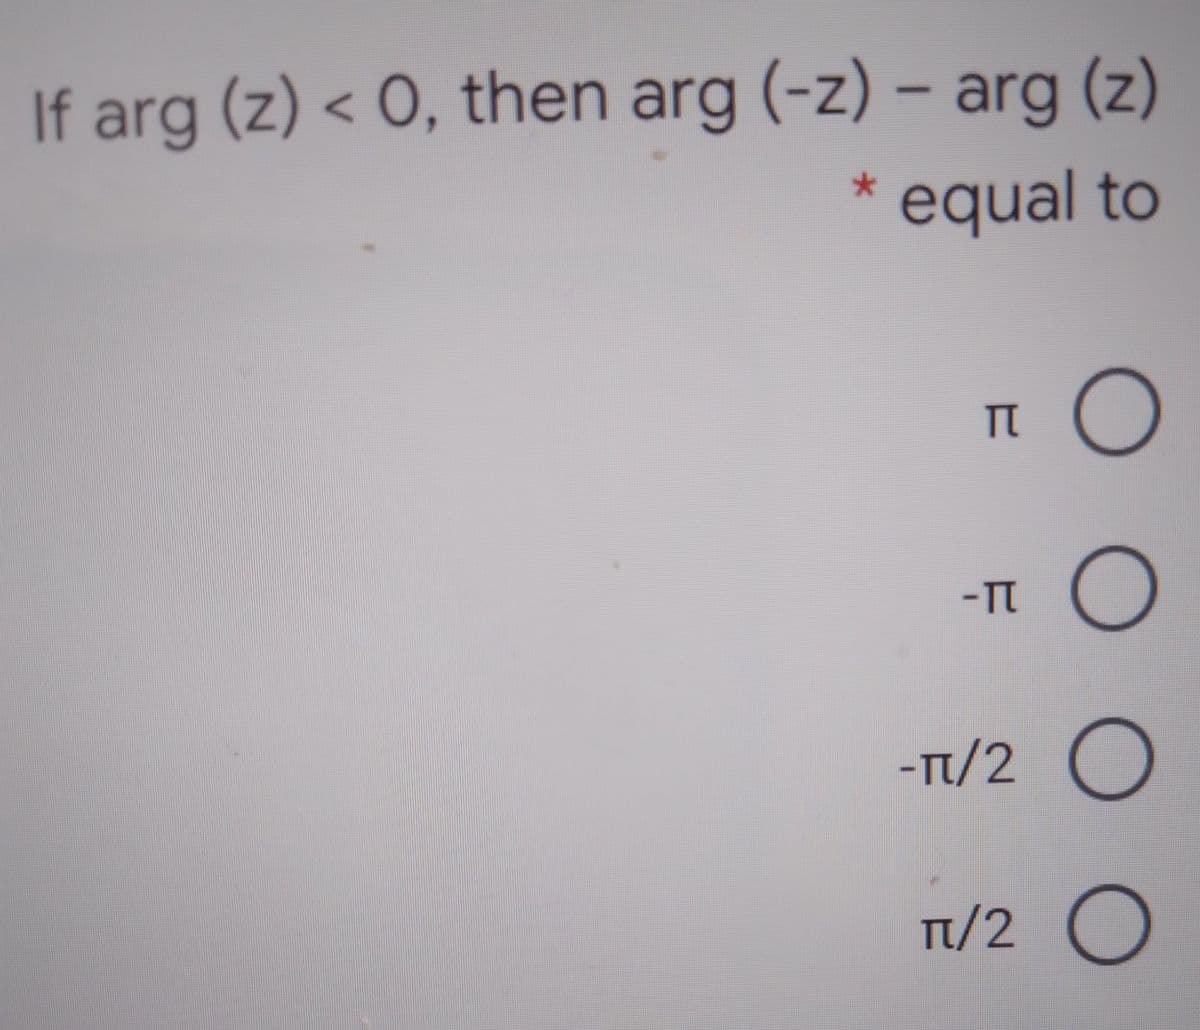 If arg (z) < 0, then arg (-z) – arg (z)
equal to
TT
-TT
-Tt/2 O
Ti/2 O
